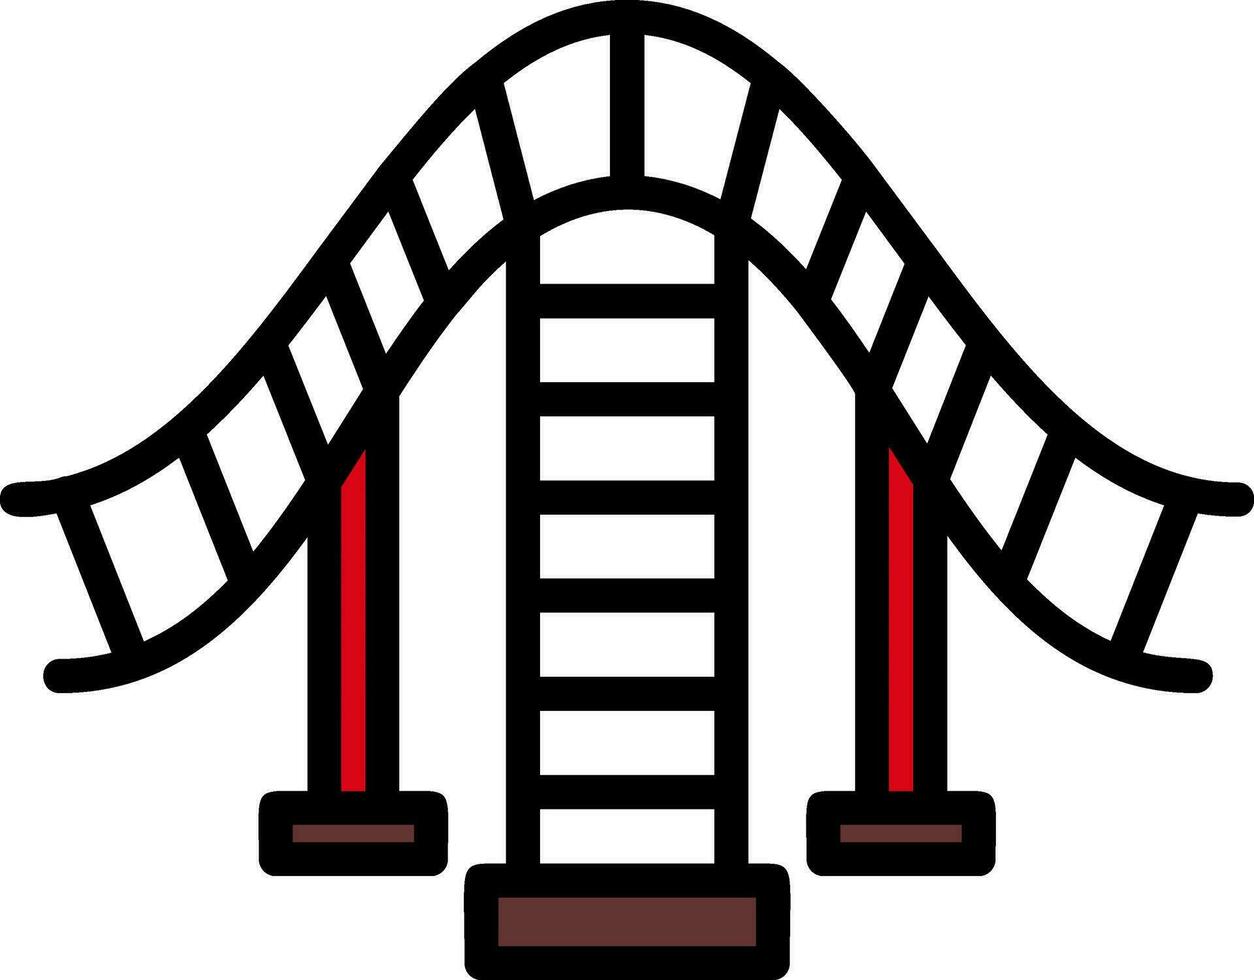 design de ícone de vetor de montanha-russa